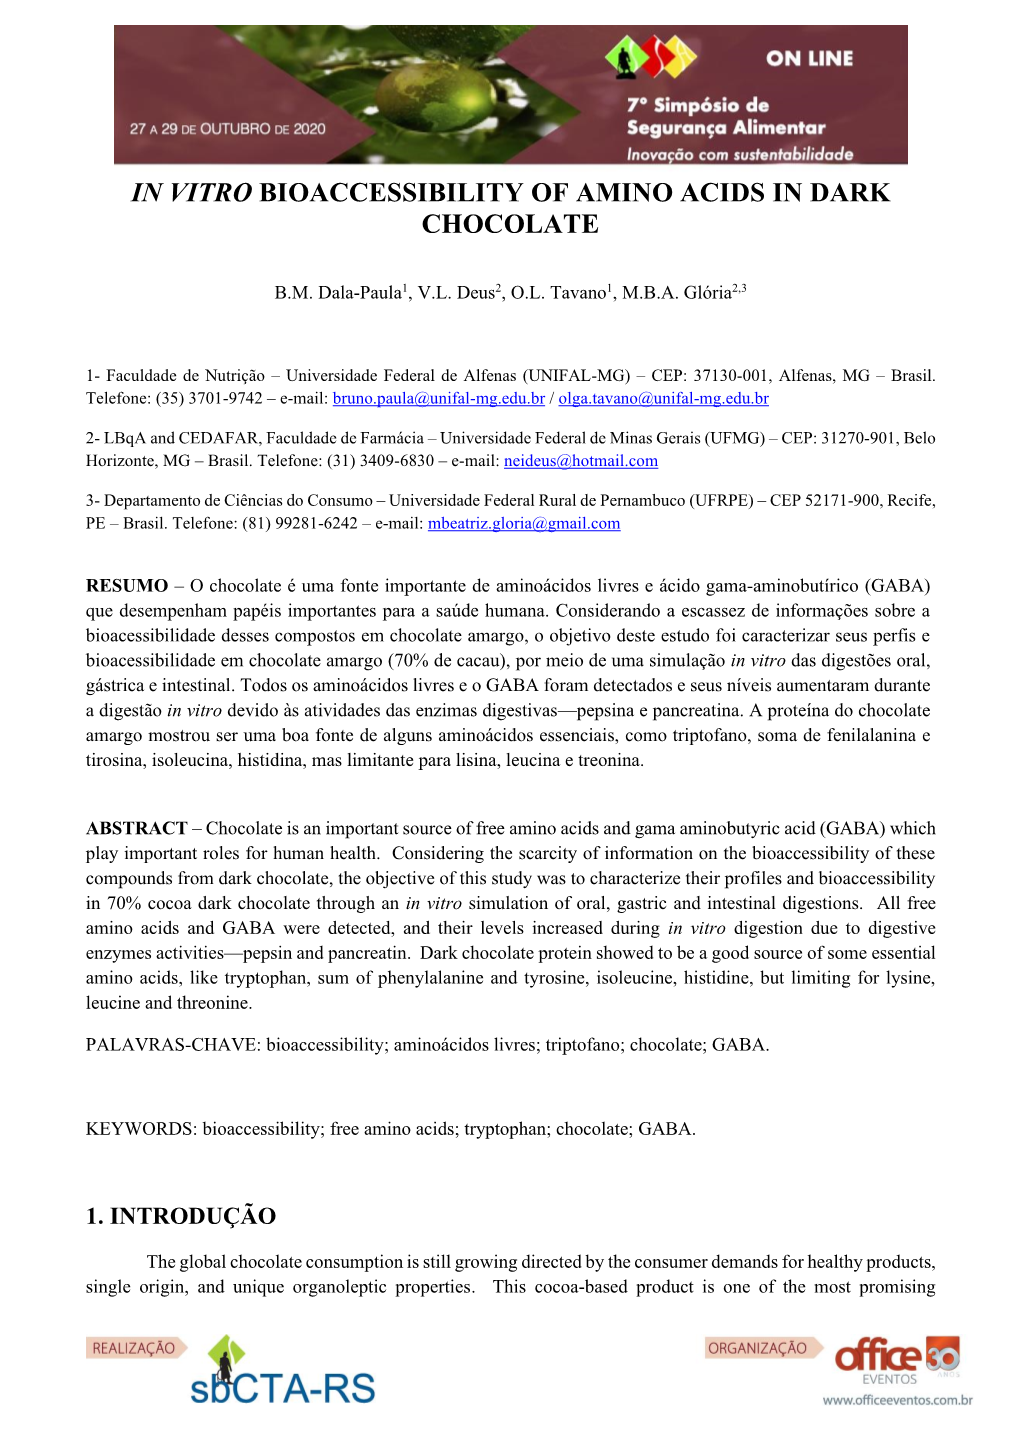 In Vitro Bioaccessibility of Amino Acids in Dark Chocolate